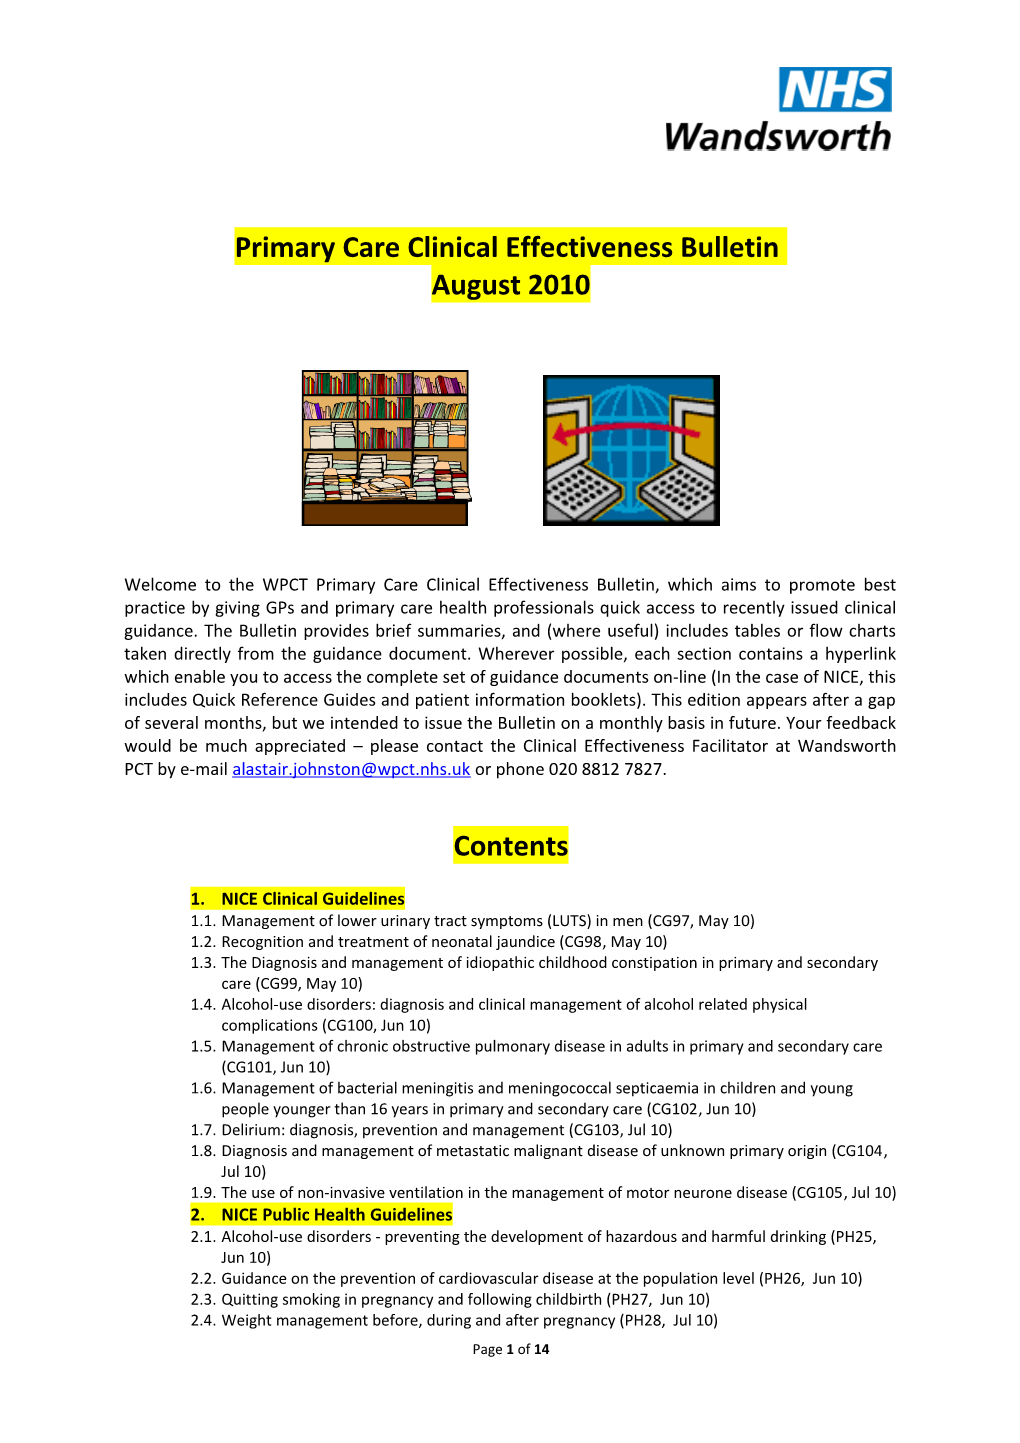 PC Clinical Effectiveness Bulletin Aug10